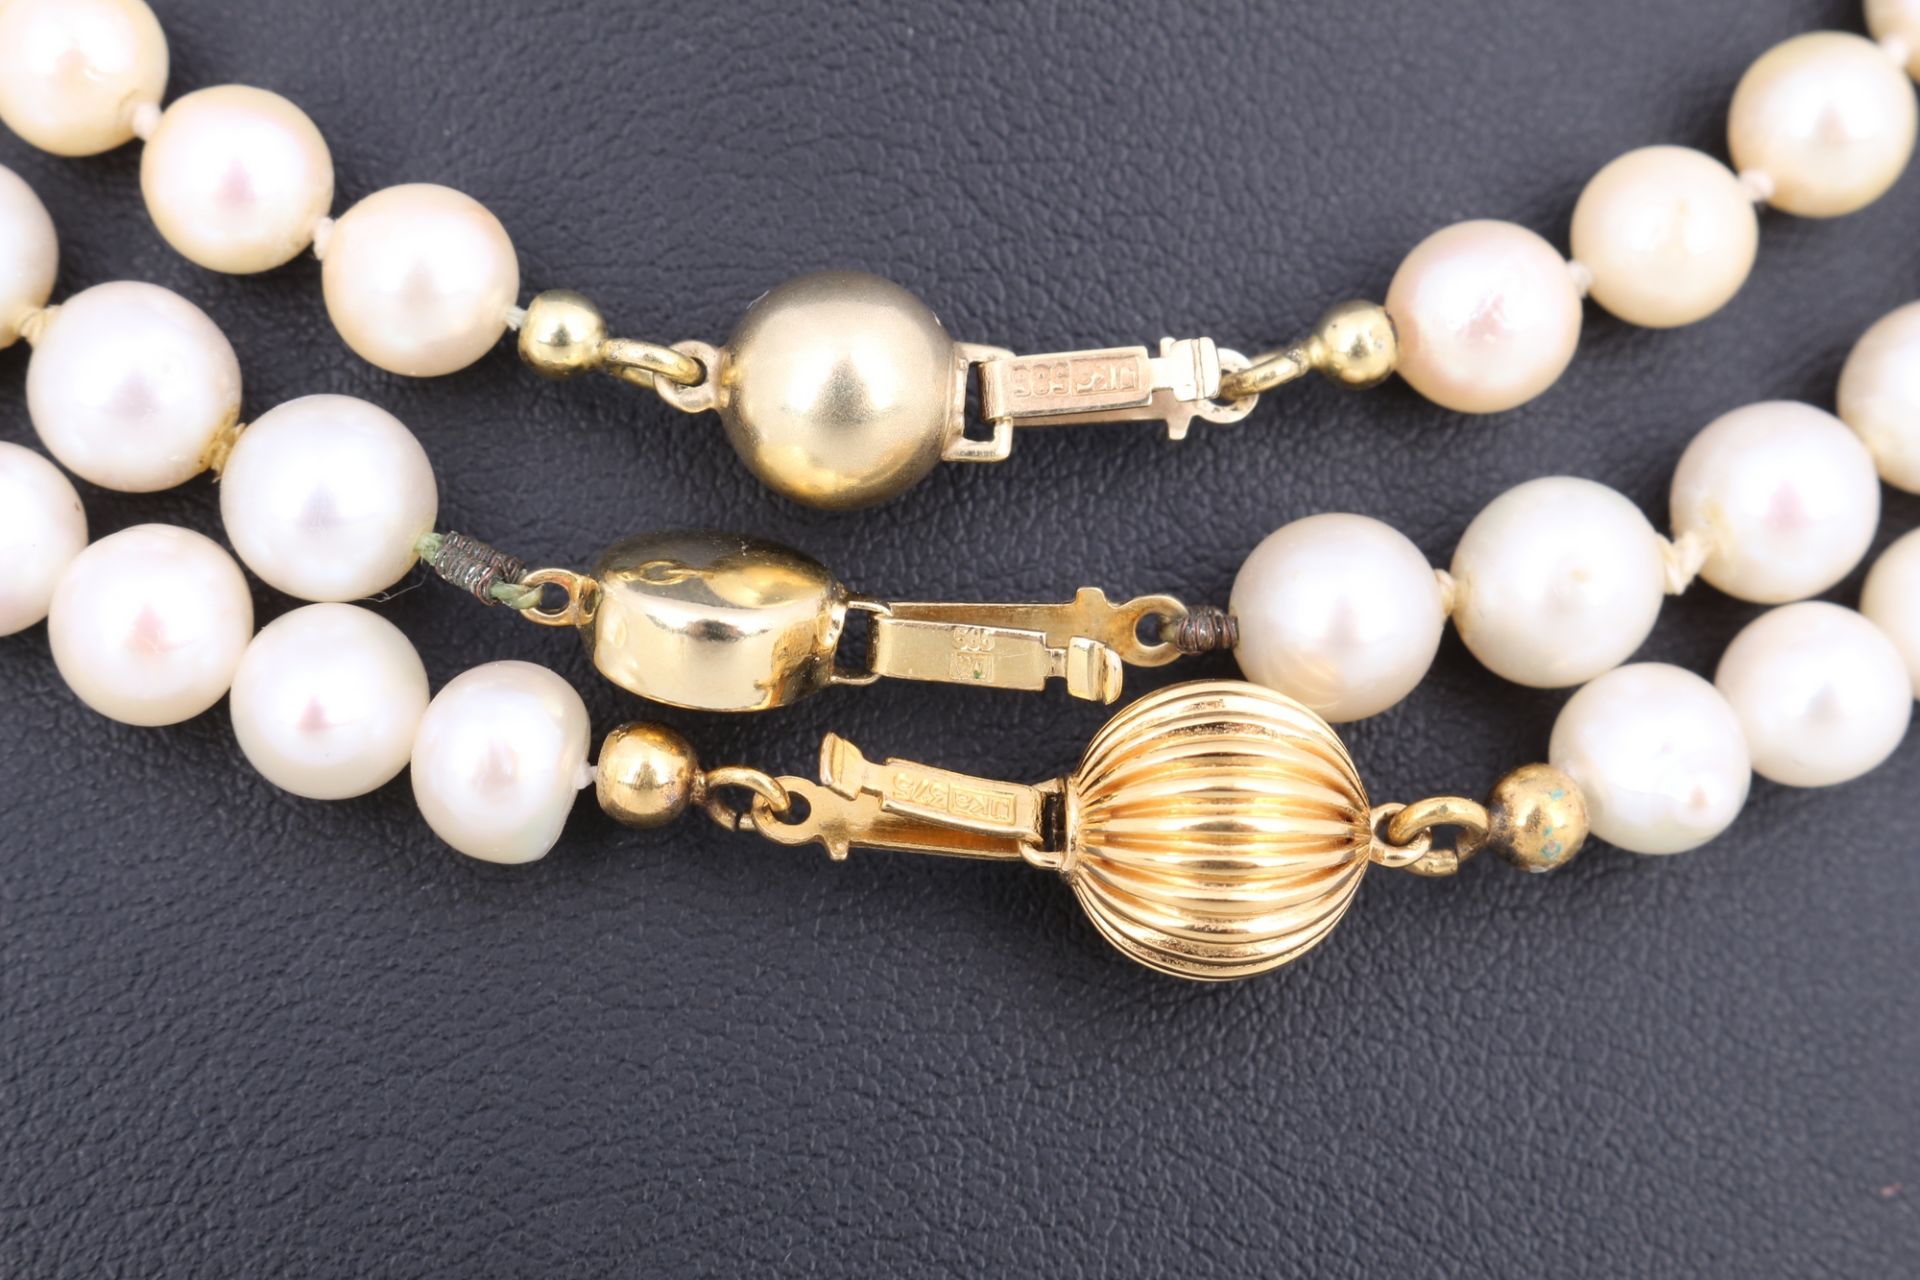 3 Perlenketten mit 375/585 Gold-Verschluss, pearl necklace with gold locks, - Bild 2 aus 5